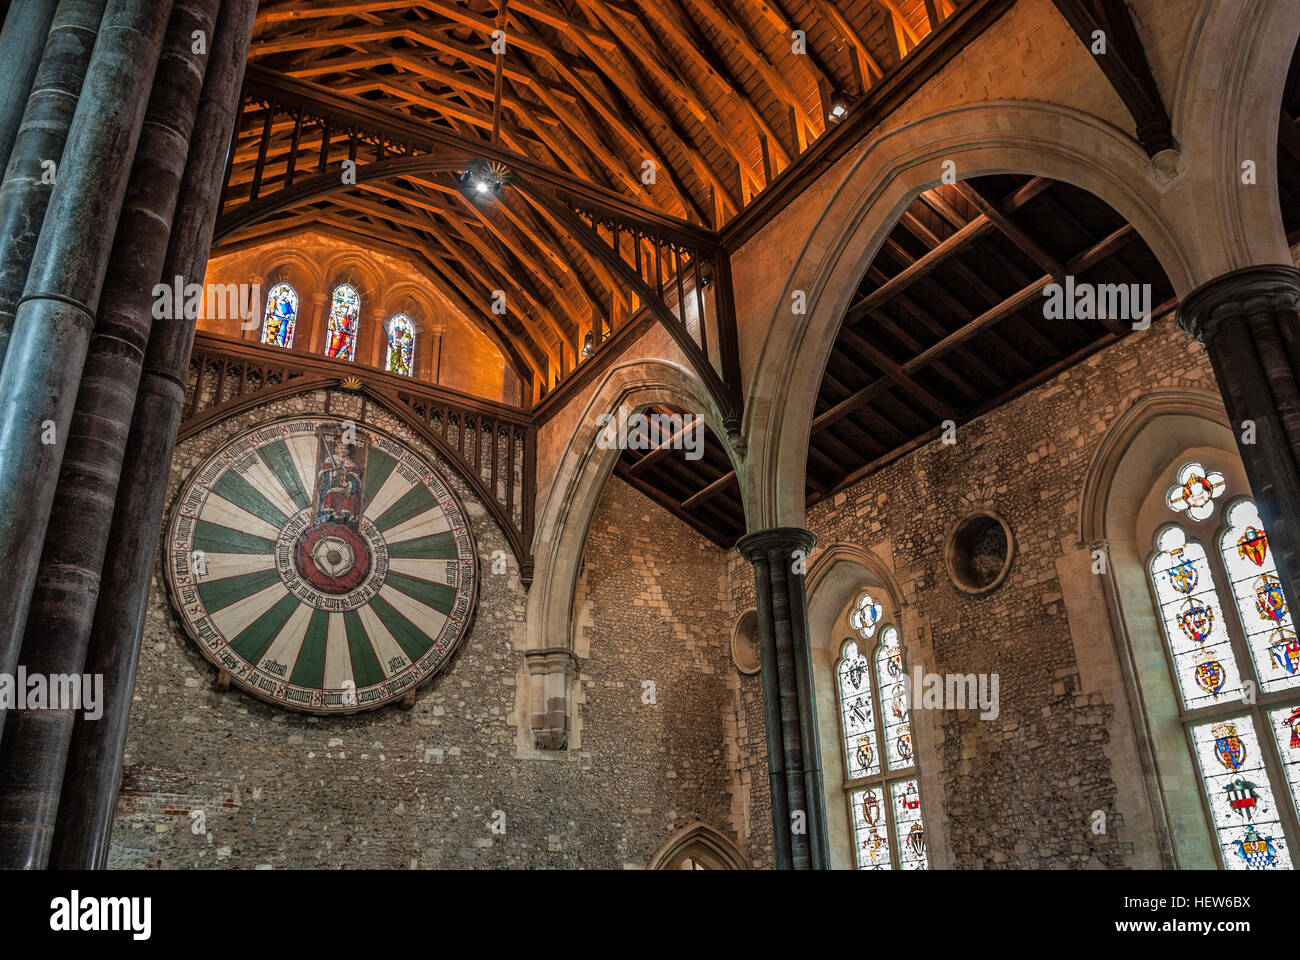 Le Grand Hall de Winchester, en Angleterre, où la légendaire table ronde du Roi Artus est situé. Banque D'Images